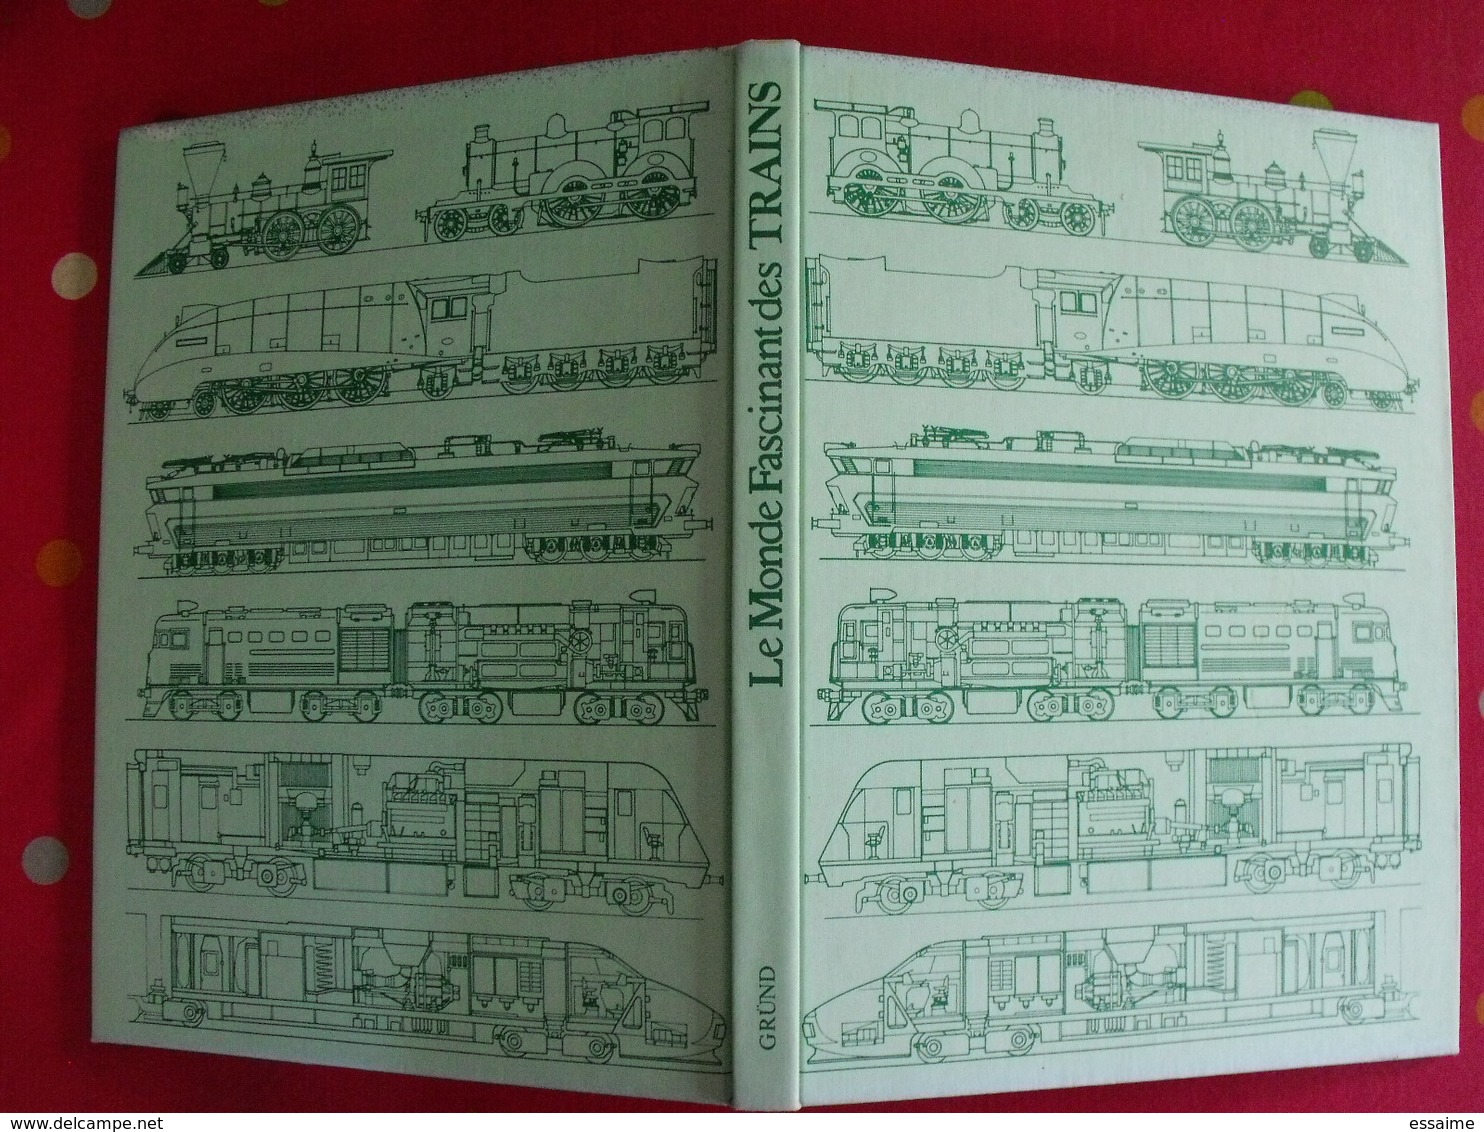 Le Monde Fascinant Des Trains. David S. Hamilton. Colinet Derogis. Gründ 1977. Bien Illustré - Railway & Tramway